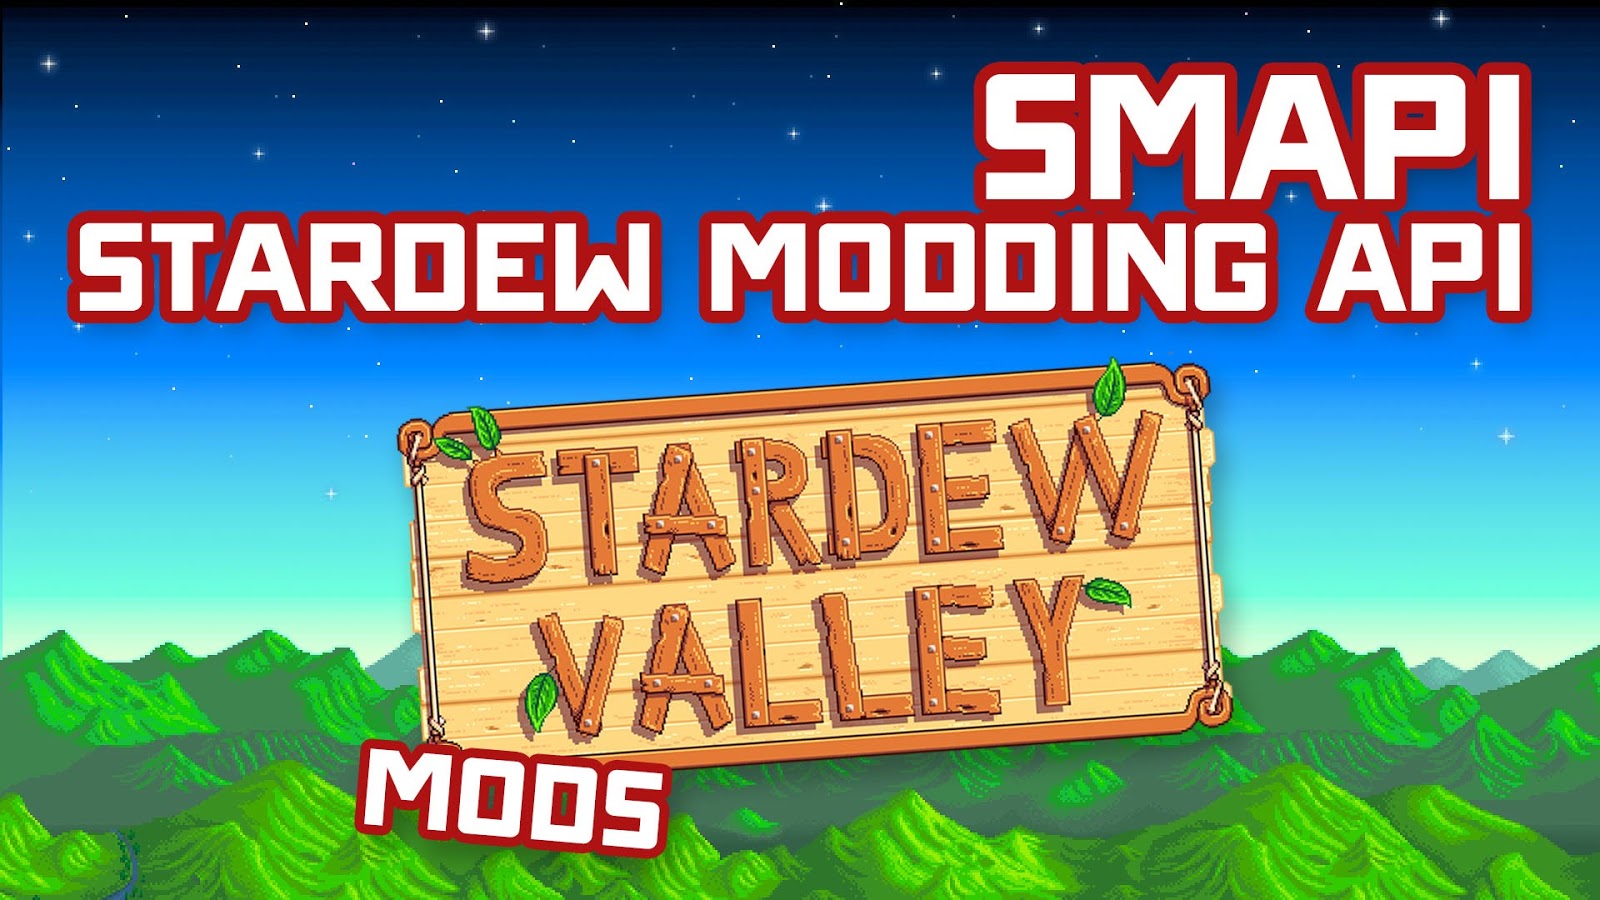 Как установить смапи. Смапи Стардью Валли. SMAPI Stardew Valley. Stardew Modding API (SMAPI). STARDEWMODDINGAPI.exe.